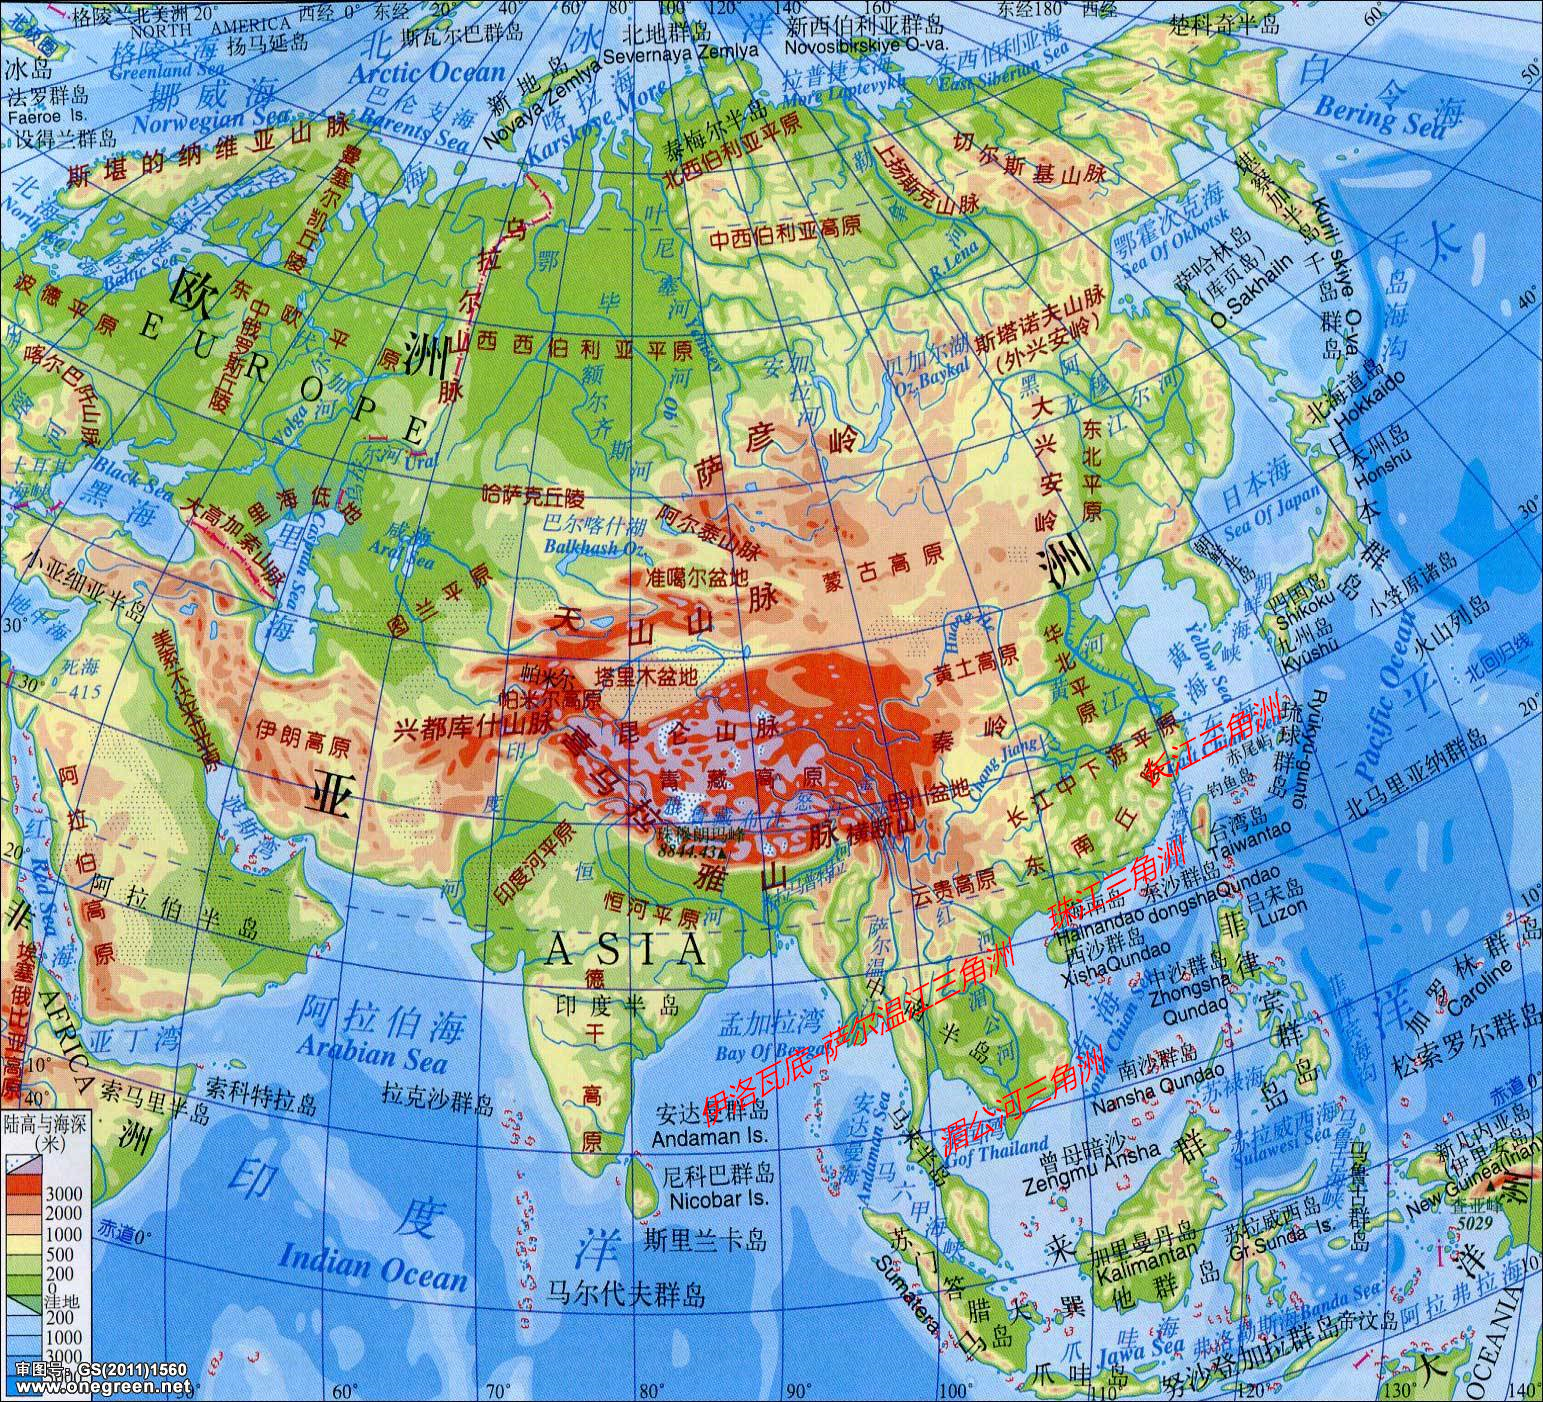 亚洲平原及三角洲分布图2:欧洲主要平原分布波德平原,其西欧和中欧